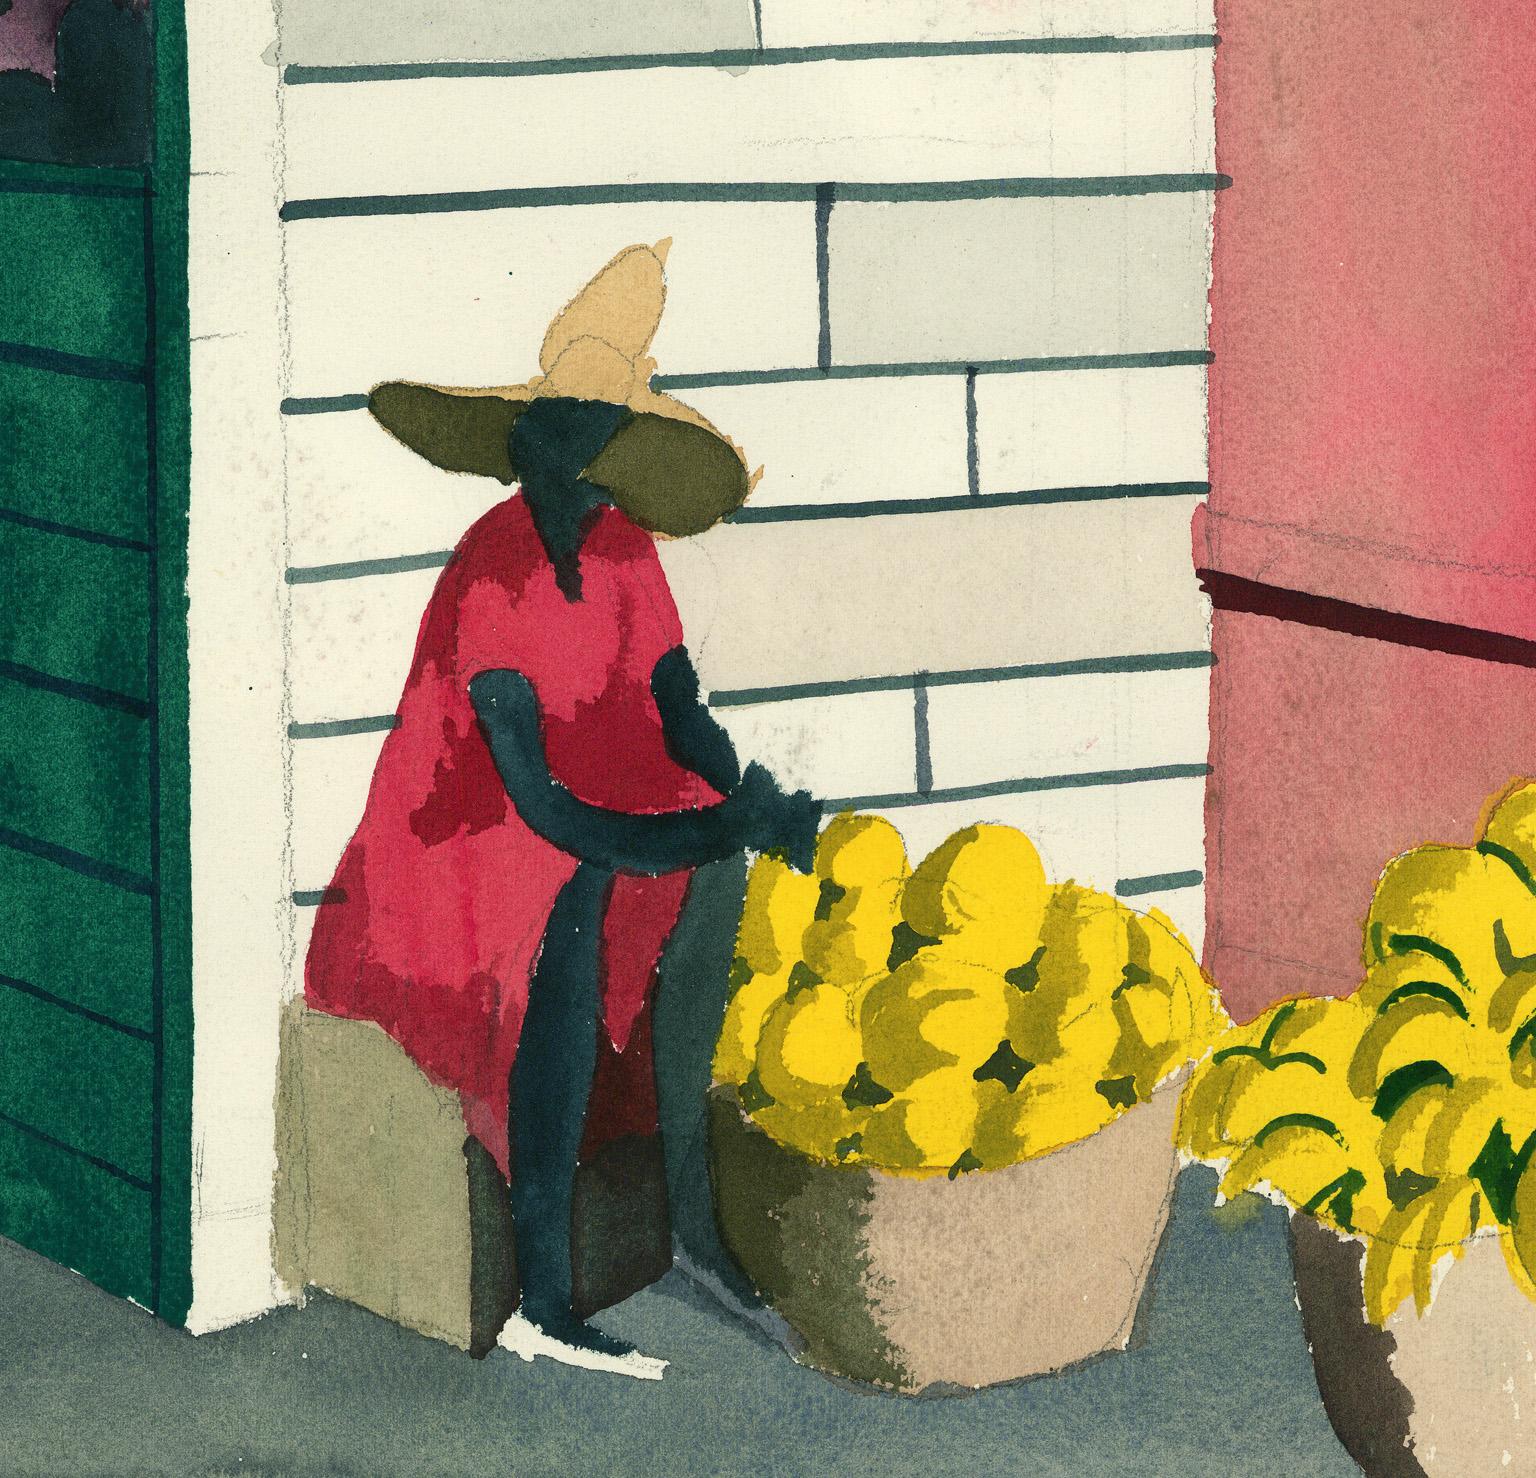 fruit vendor cartoon